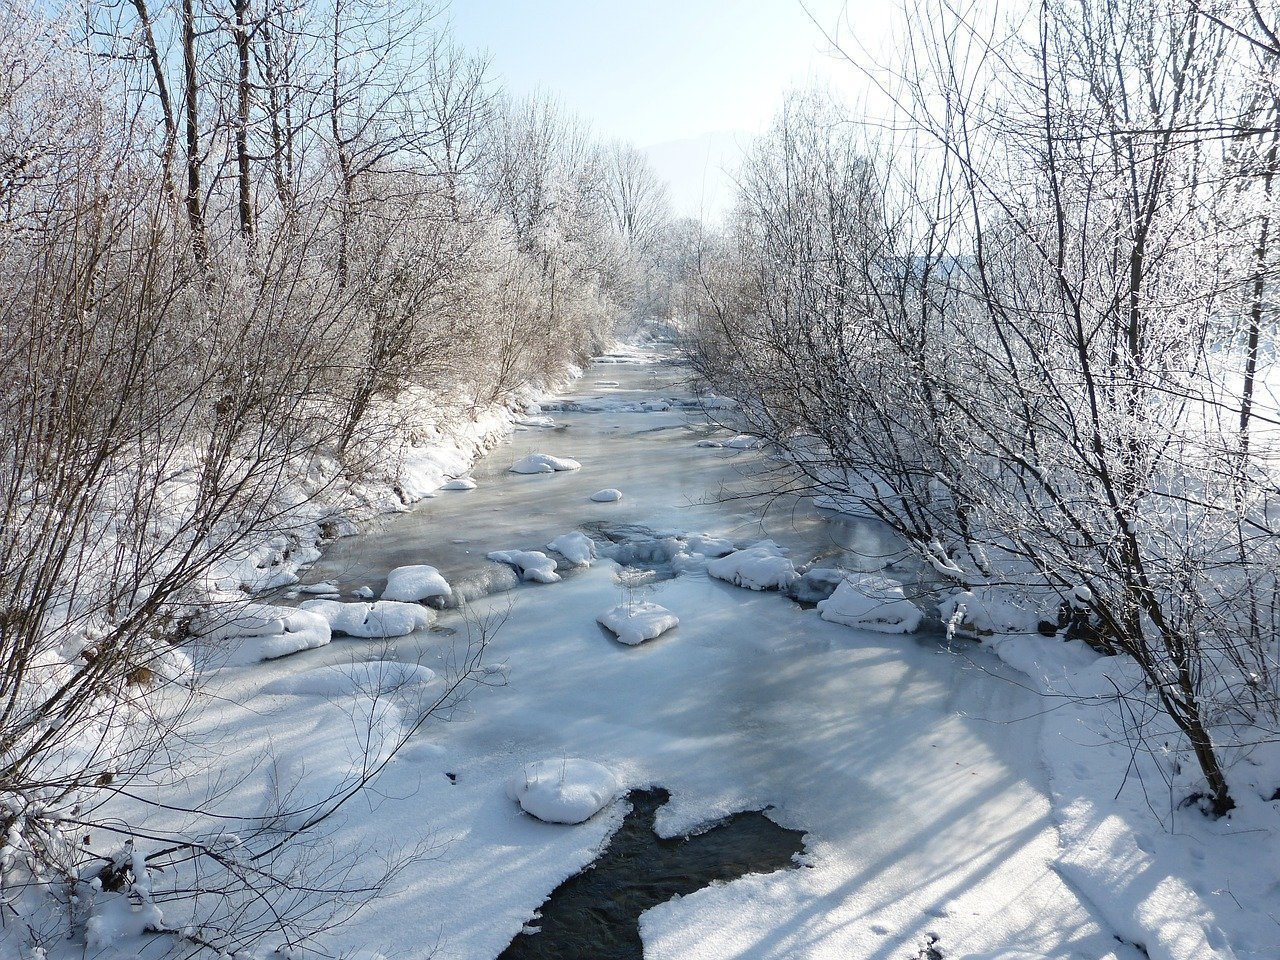 Frozen river. Image credit: Pixabay